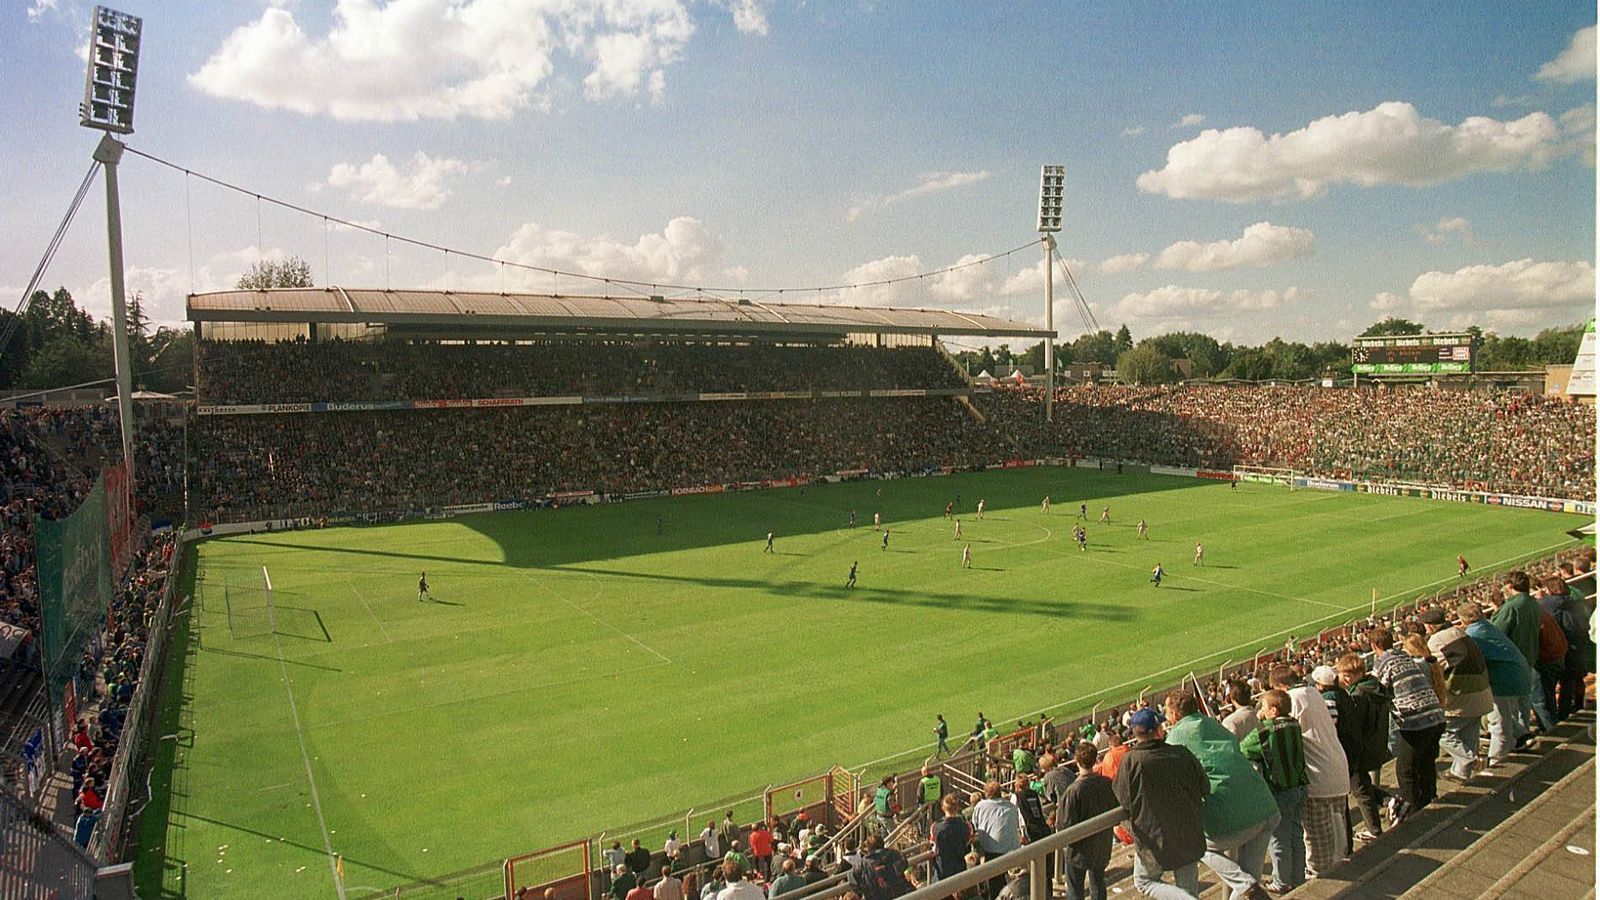 
                <strong>Bökelbergstadion (Borussia Mönchengladbach)</strong><br>
                Die erfolgreichste Zeit der Vereinsgeschichte erlebte Borussia Mönchengladbach in den 70er-Jahren. Der "Bökelberg" wurde in dieser Zeit zur Legende. Mit Spielern wie Günter Netzer, Jupp Heynckes, Berti Vogts, etc. dominierten die Gladbacher die Bundesliga. 2004 fand das letzte Spiel im Bökelbergstadion statt. Mittlerweile befindet sich auf dem Gelände eine Wohnsiedlung.
              